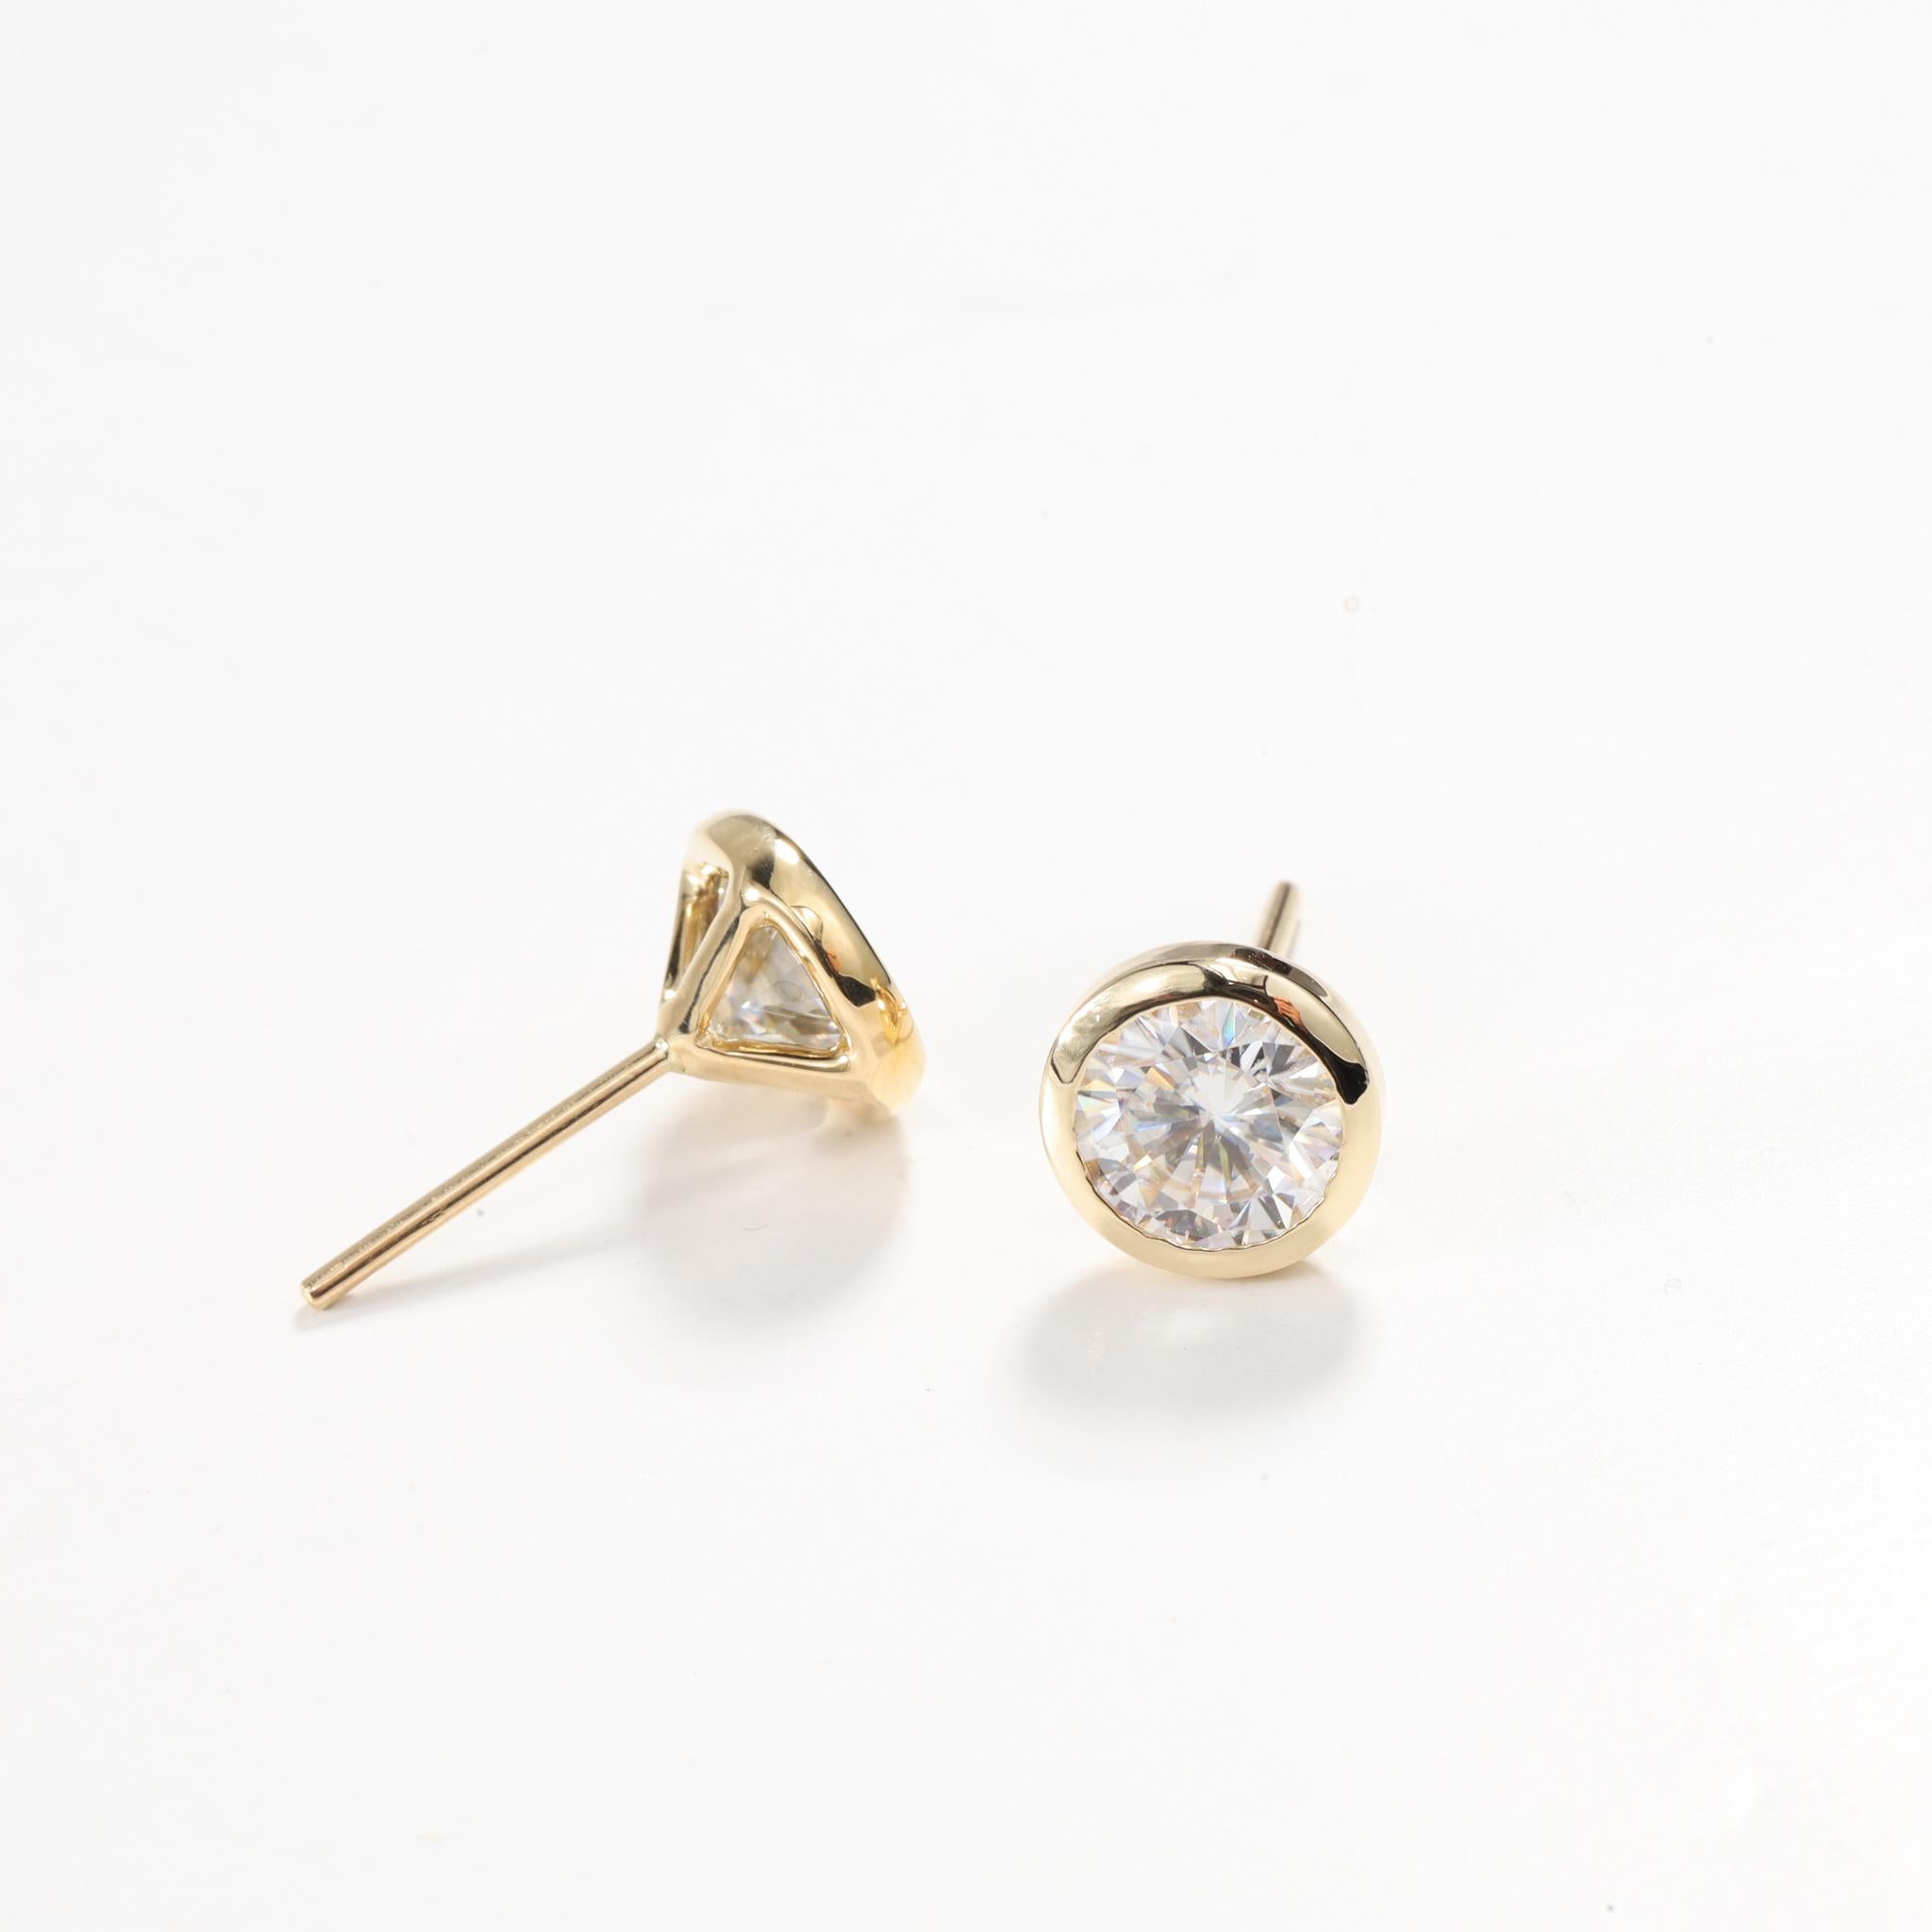 GIA Bericht zertifiziert 2 Karat Art Deco Diamant Rundschliff Ohrstecker 

Erhältlich in 18k Gelbgold.

Das gleiche Design kann auch mit anderen Edelsteinen auf Anfrage hergestellt werden.

Einzelheiten zum Produkt:

- Massiv Gold

- ca. 2 Karat pro